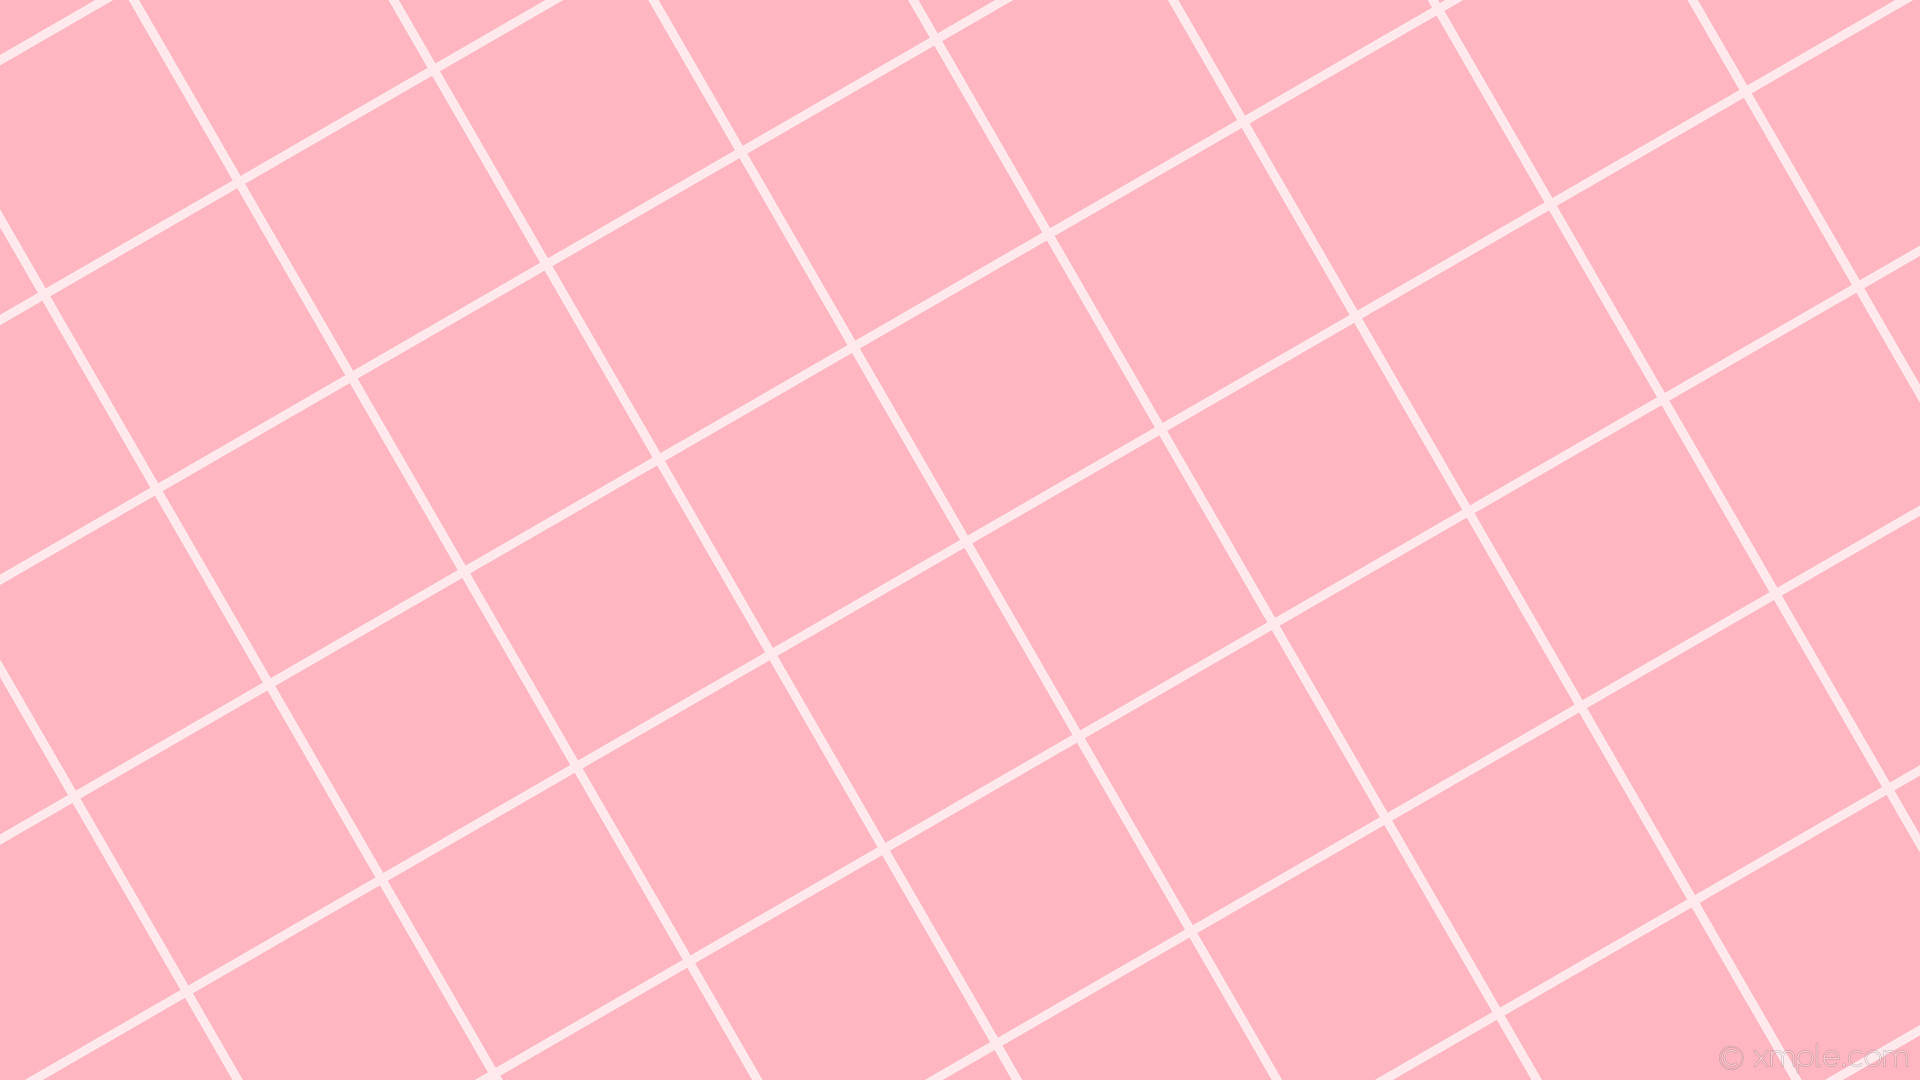 Light Pink Tiles Wallpaper